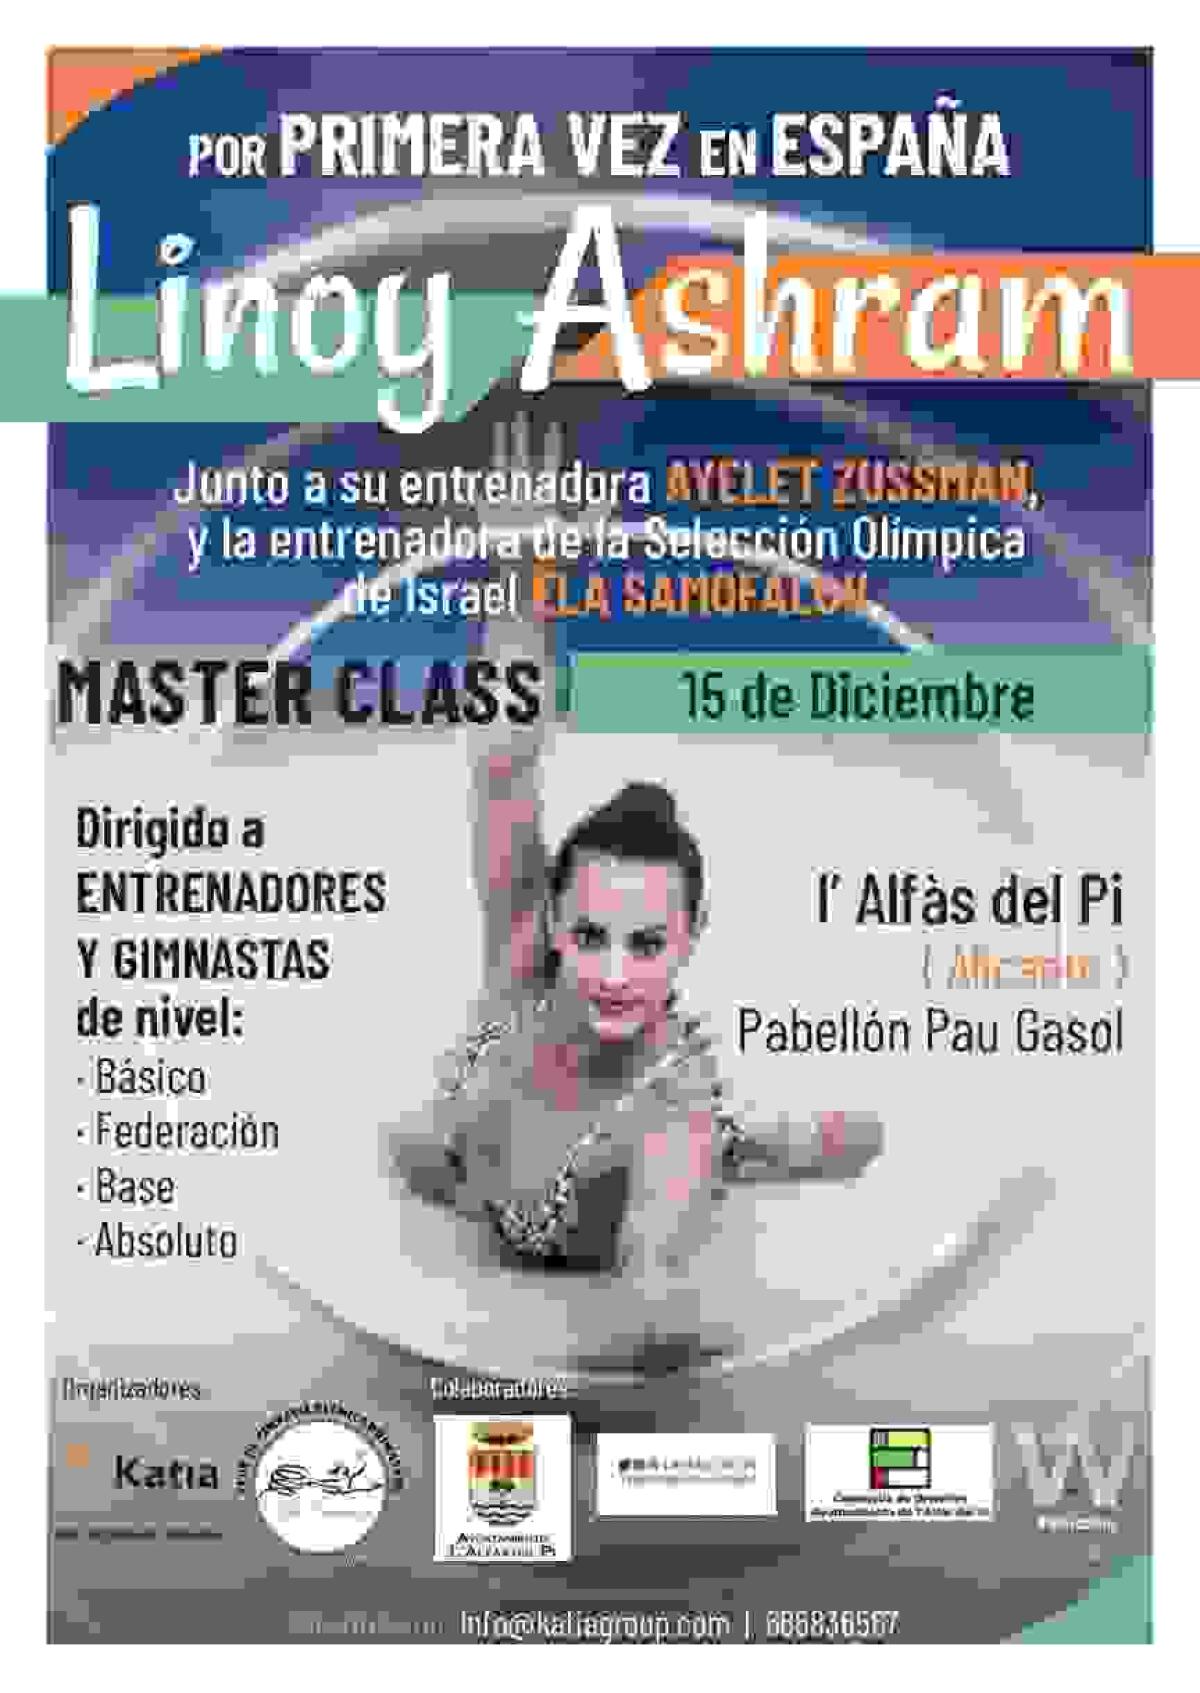 La conocida gimnasta israelí Linoy Ashram impartirá una clase magistral en l’Alfàs del Pi